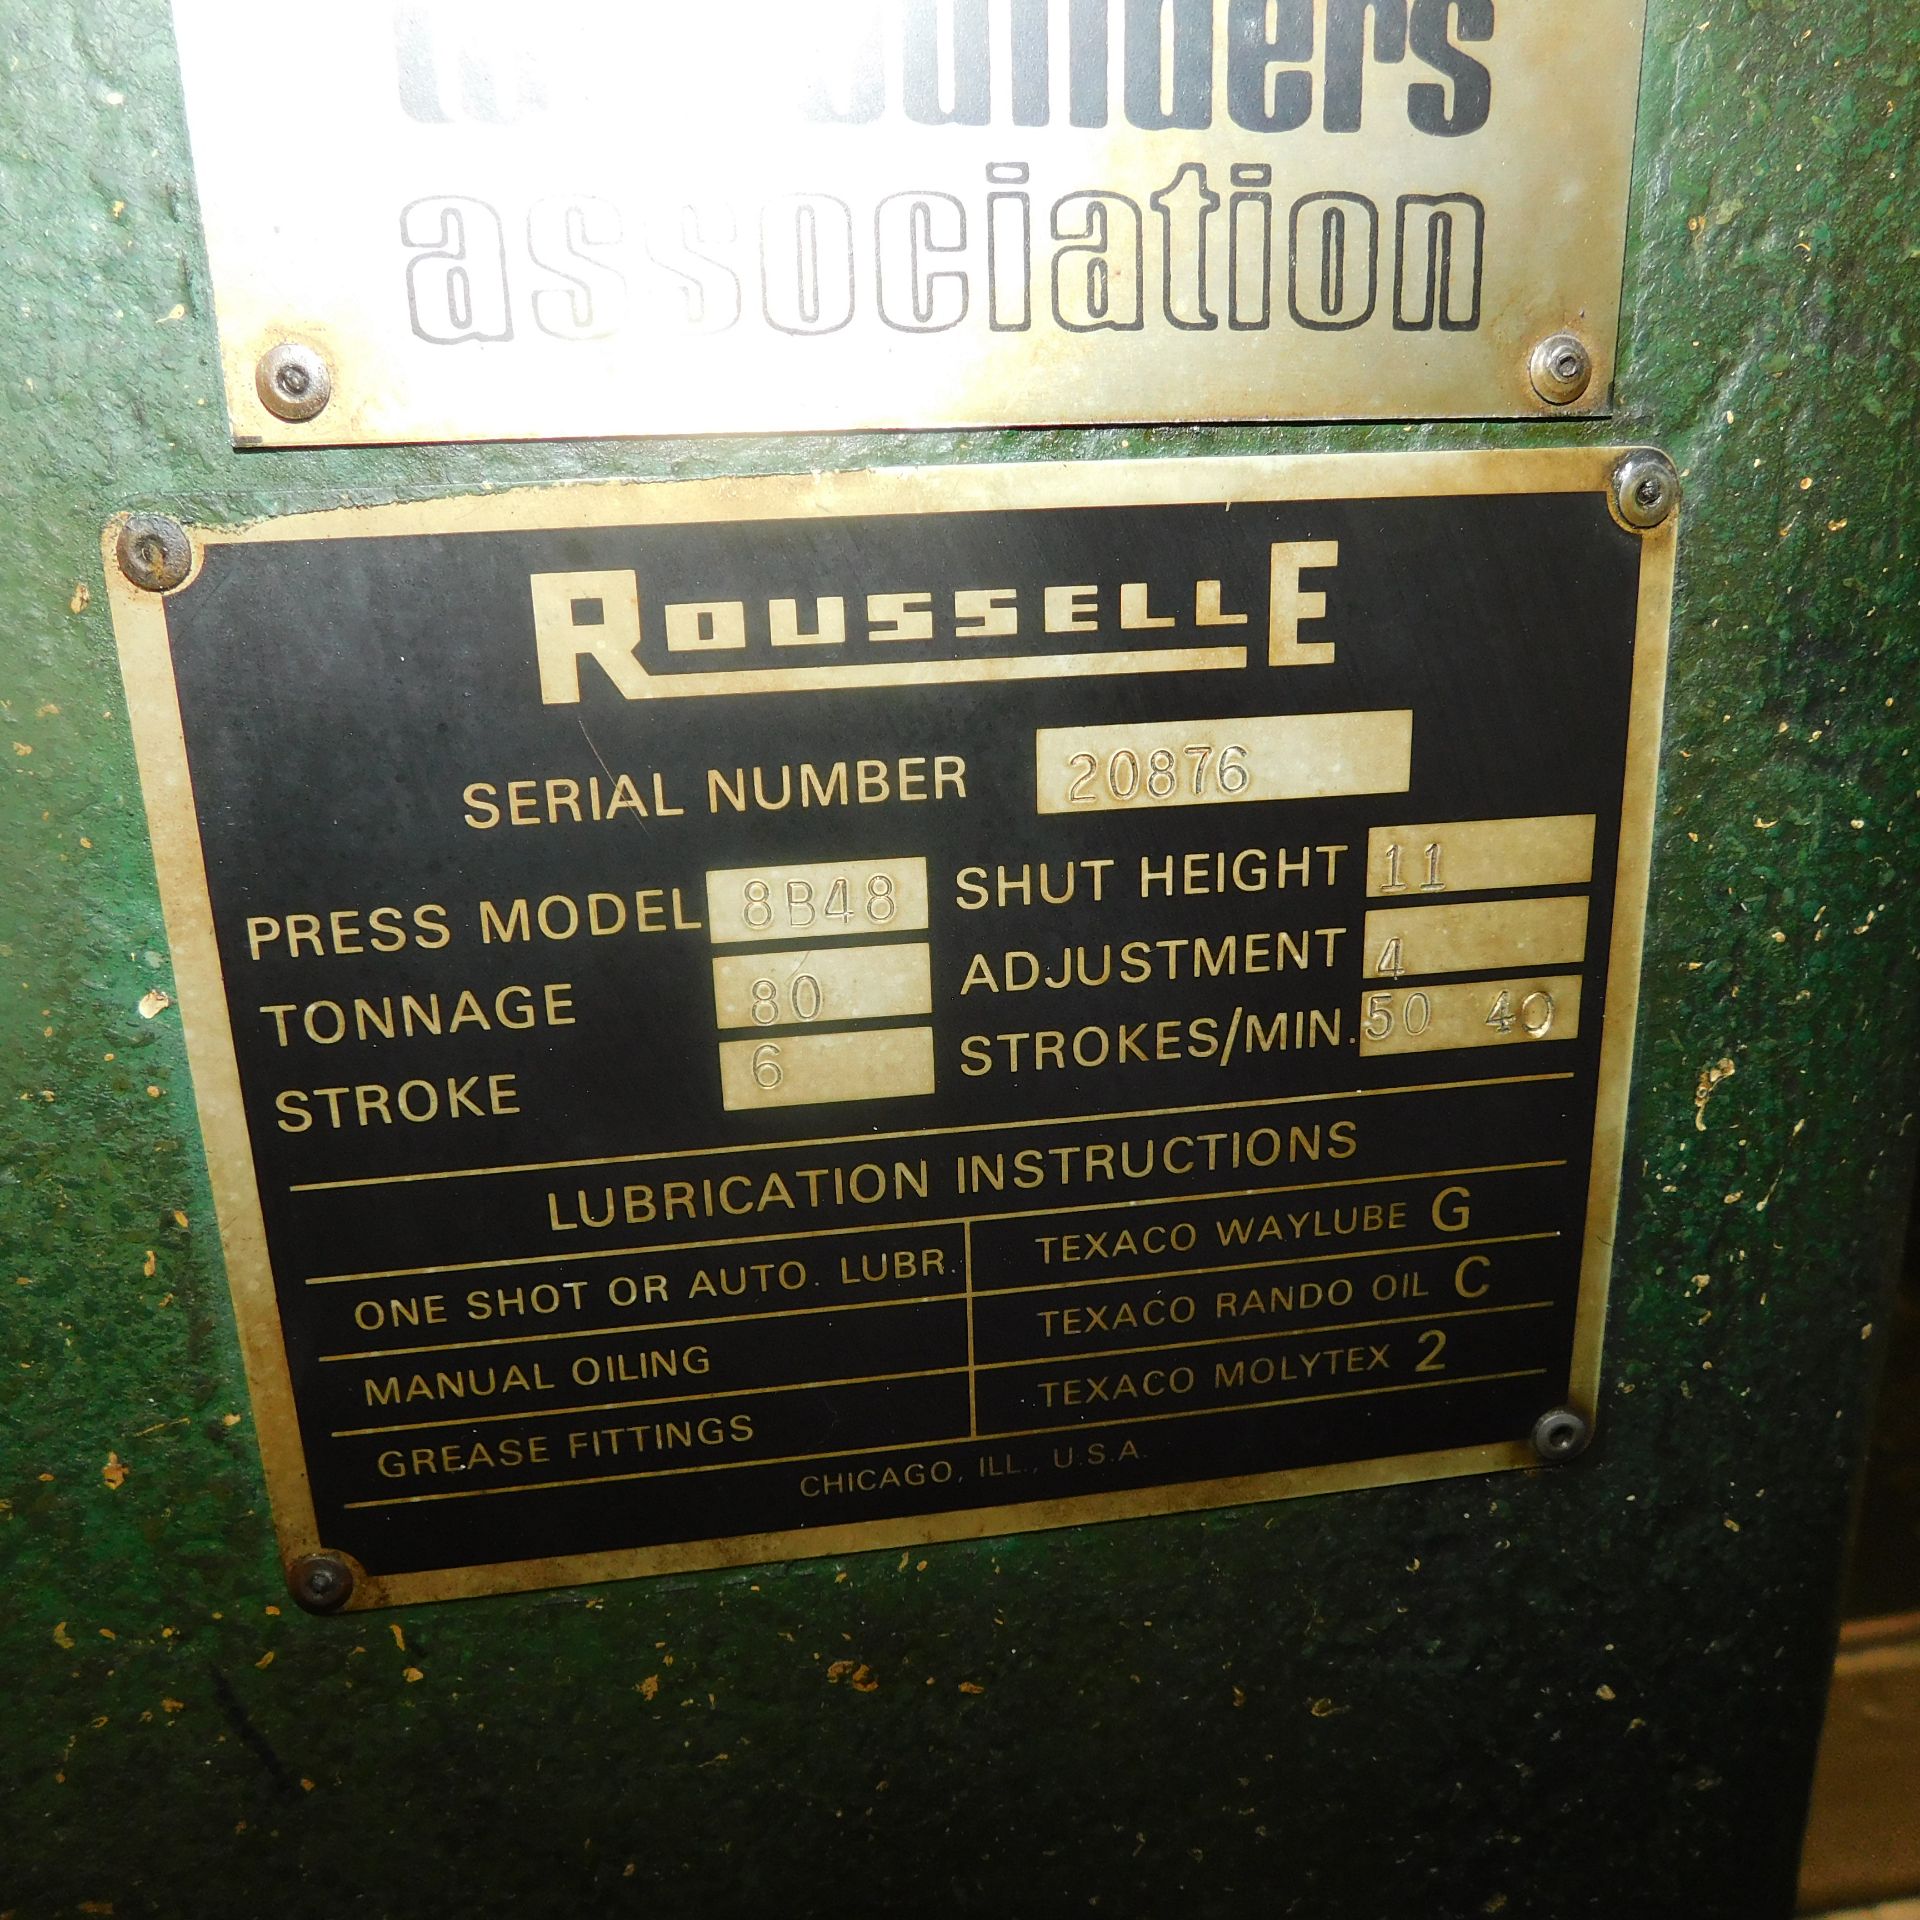 Rousselle Model 8B-48 Gap Frame Punch Press, s/n 20876, 80 Ton, 6" Stroke, 4" Adjustment, 11" Shut - Image 3 of 7